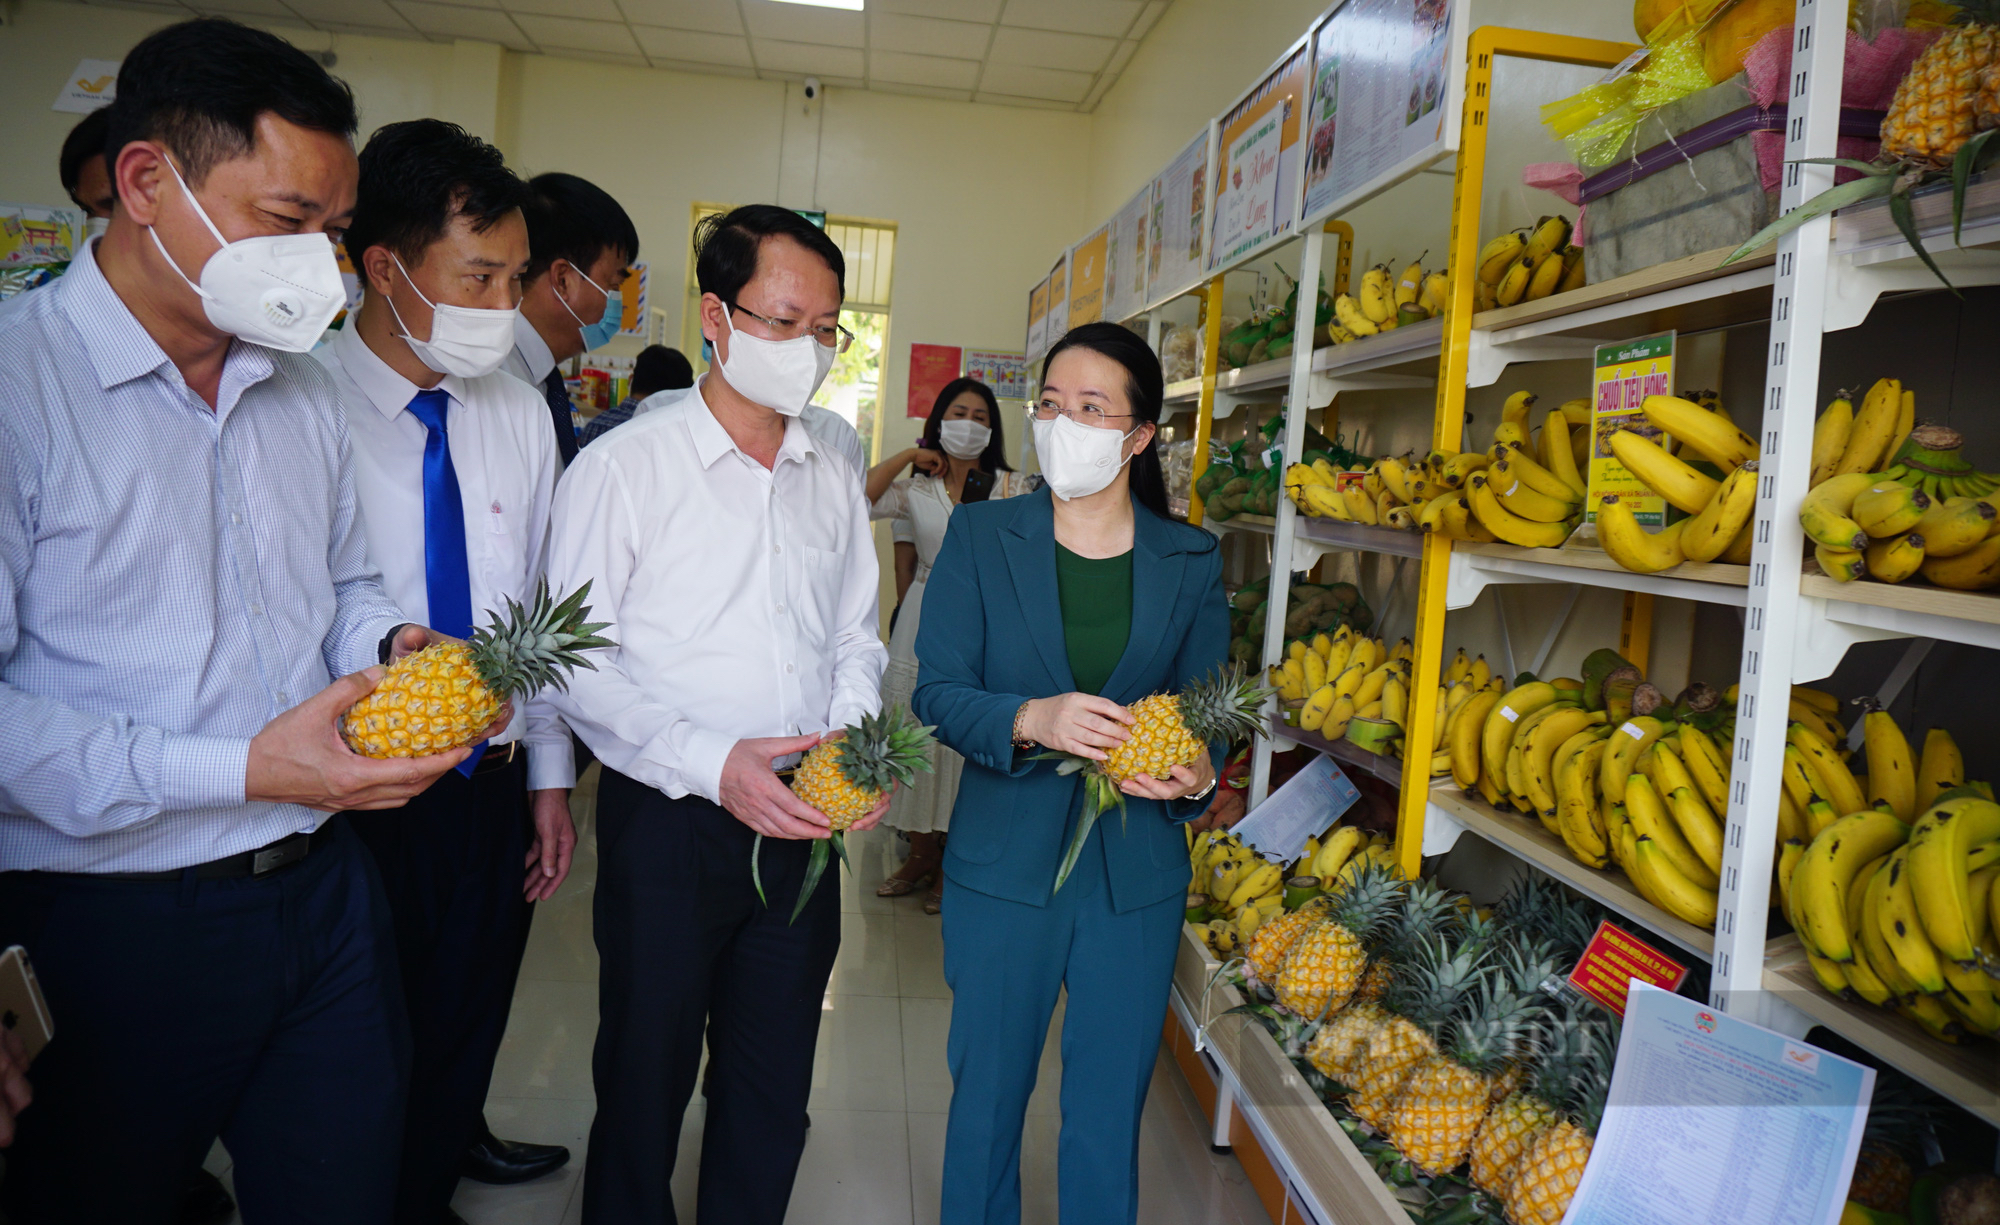 Hà Nội: Hội ND và Bưu điện khai trương gian hàng bán gà đồi, rau rừng và vô số nông sản đặc sản Ba Vì - Ảnh 1.